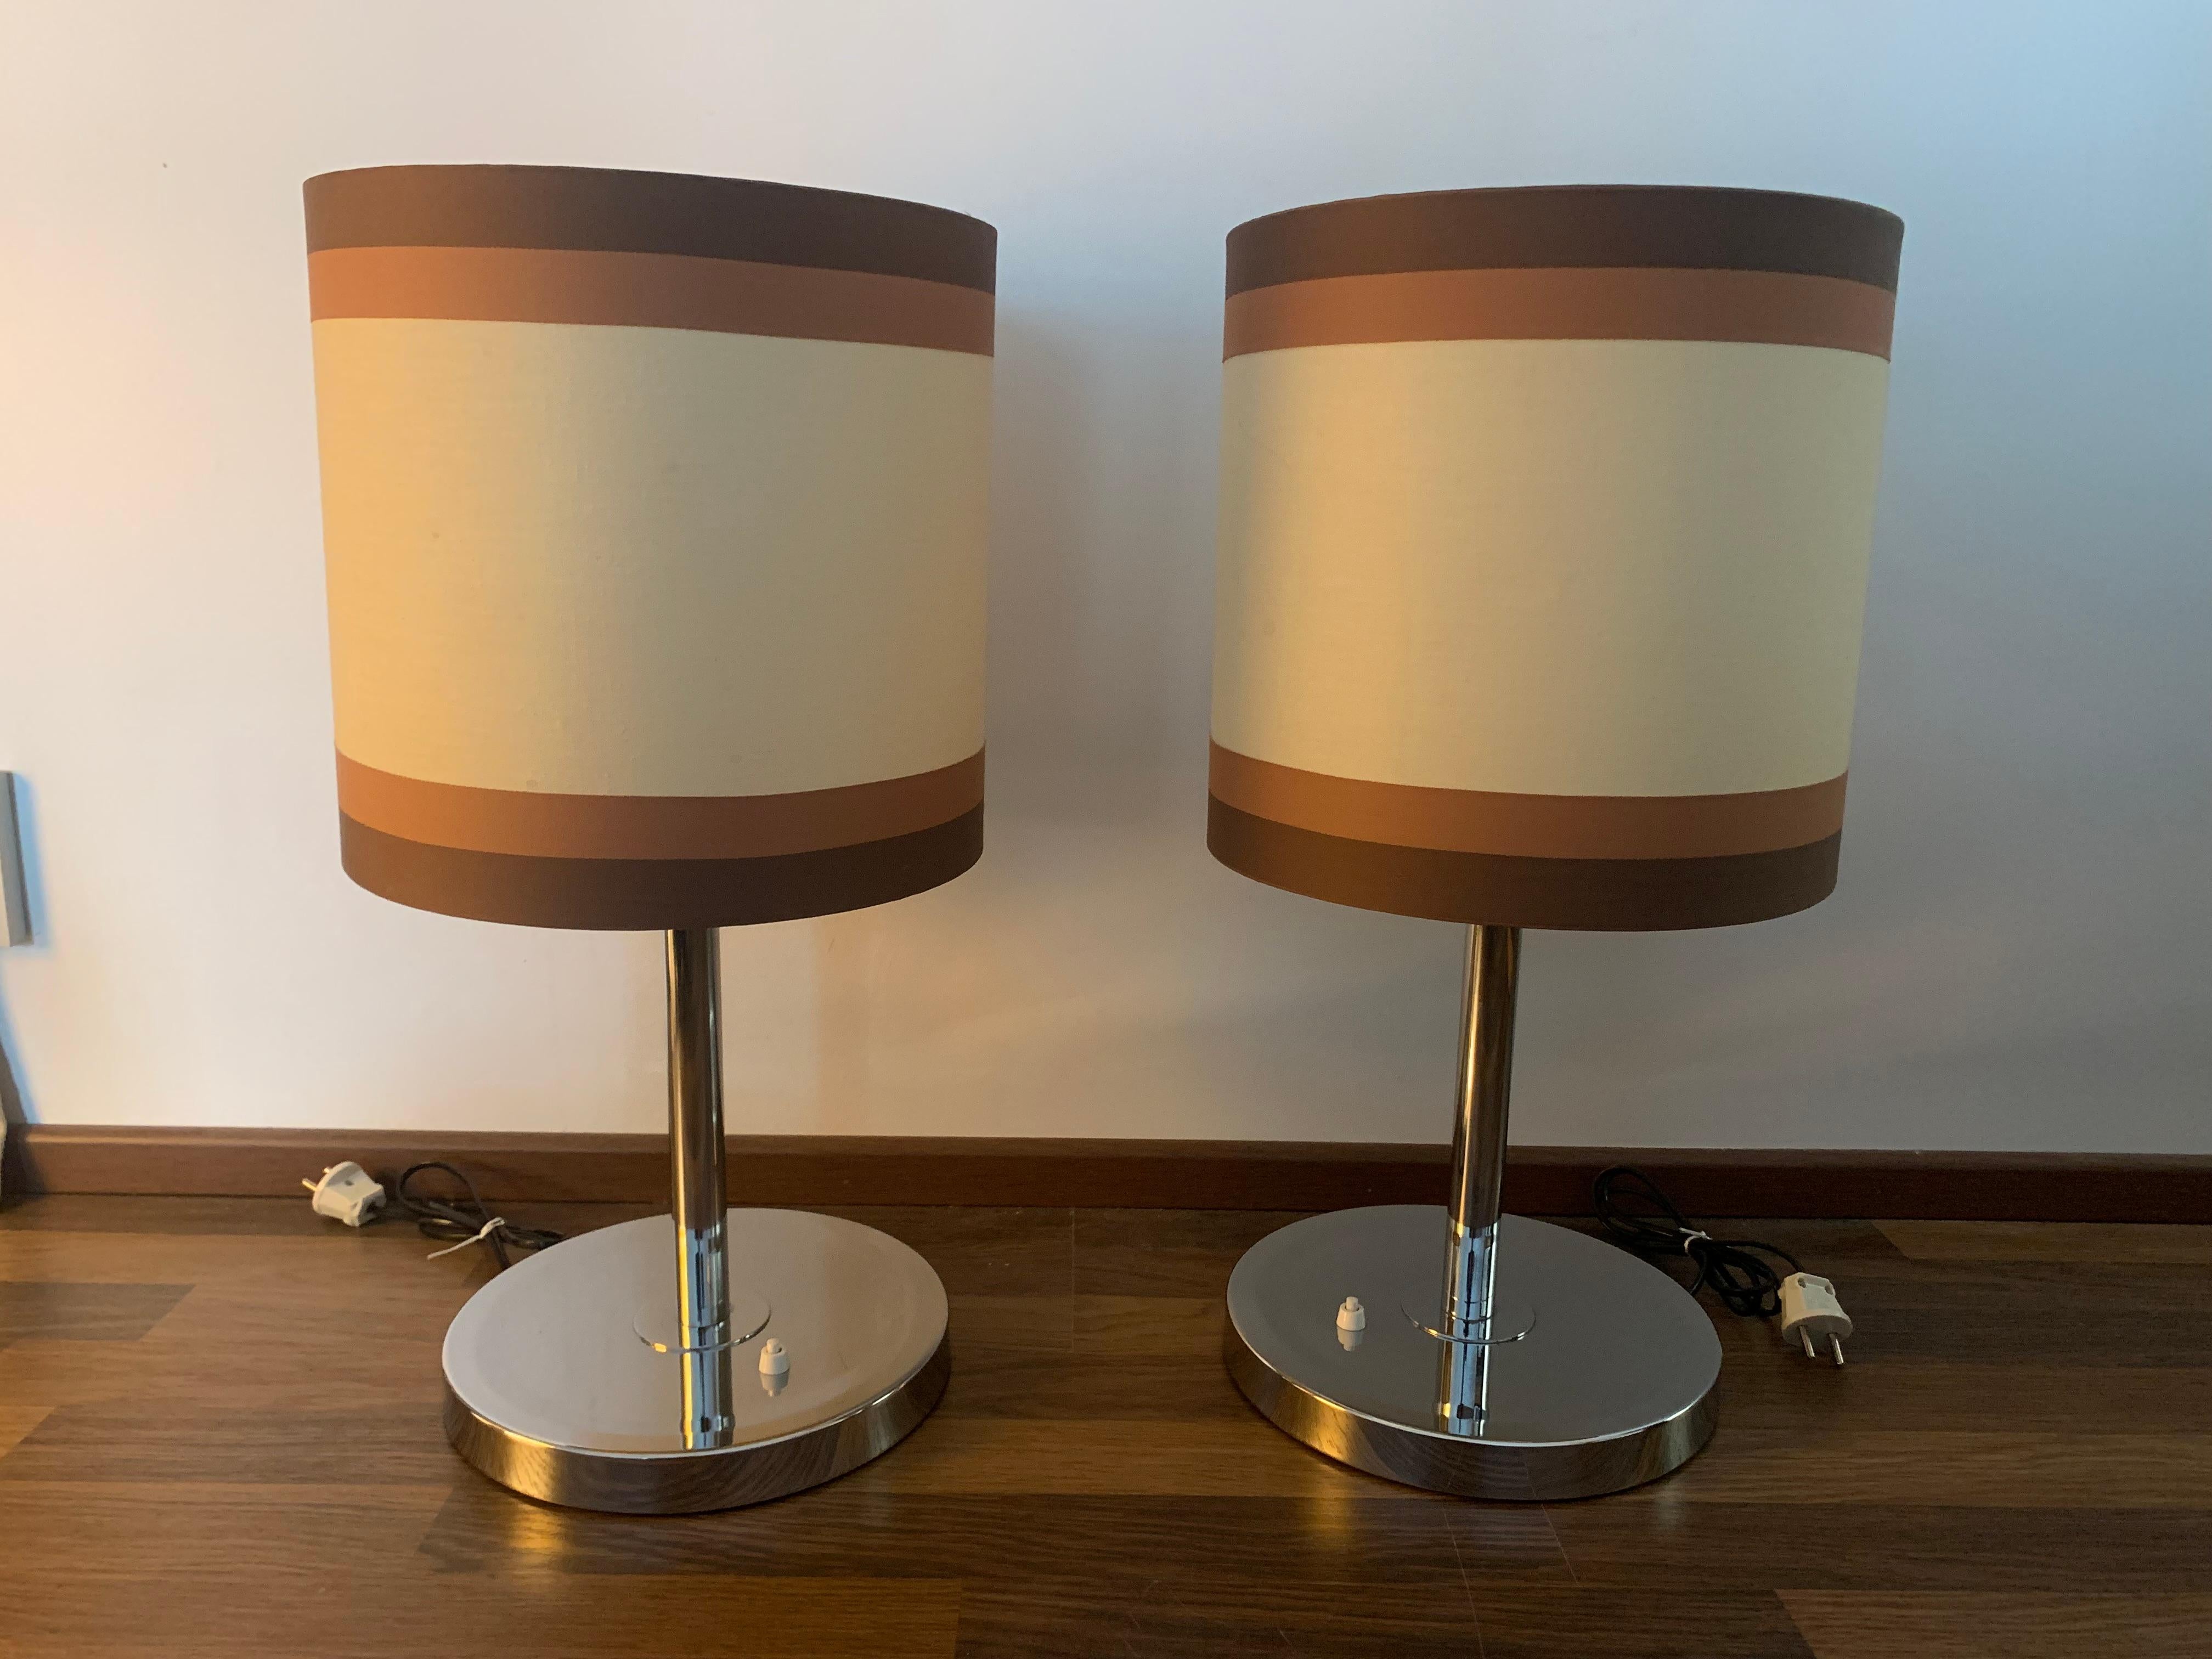 Ein wunderschönes Paar finnischer Design-Lampen, die Lampen sind mit originalen Schirmen verziert, die in gutem Originalzustand sind. Diese Lampen können direkt zur Beleuchtung Ihres Hauses verwendet werden.